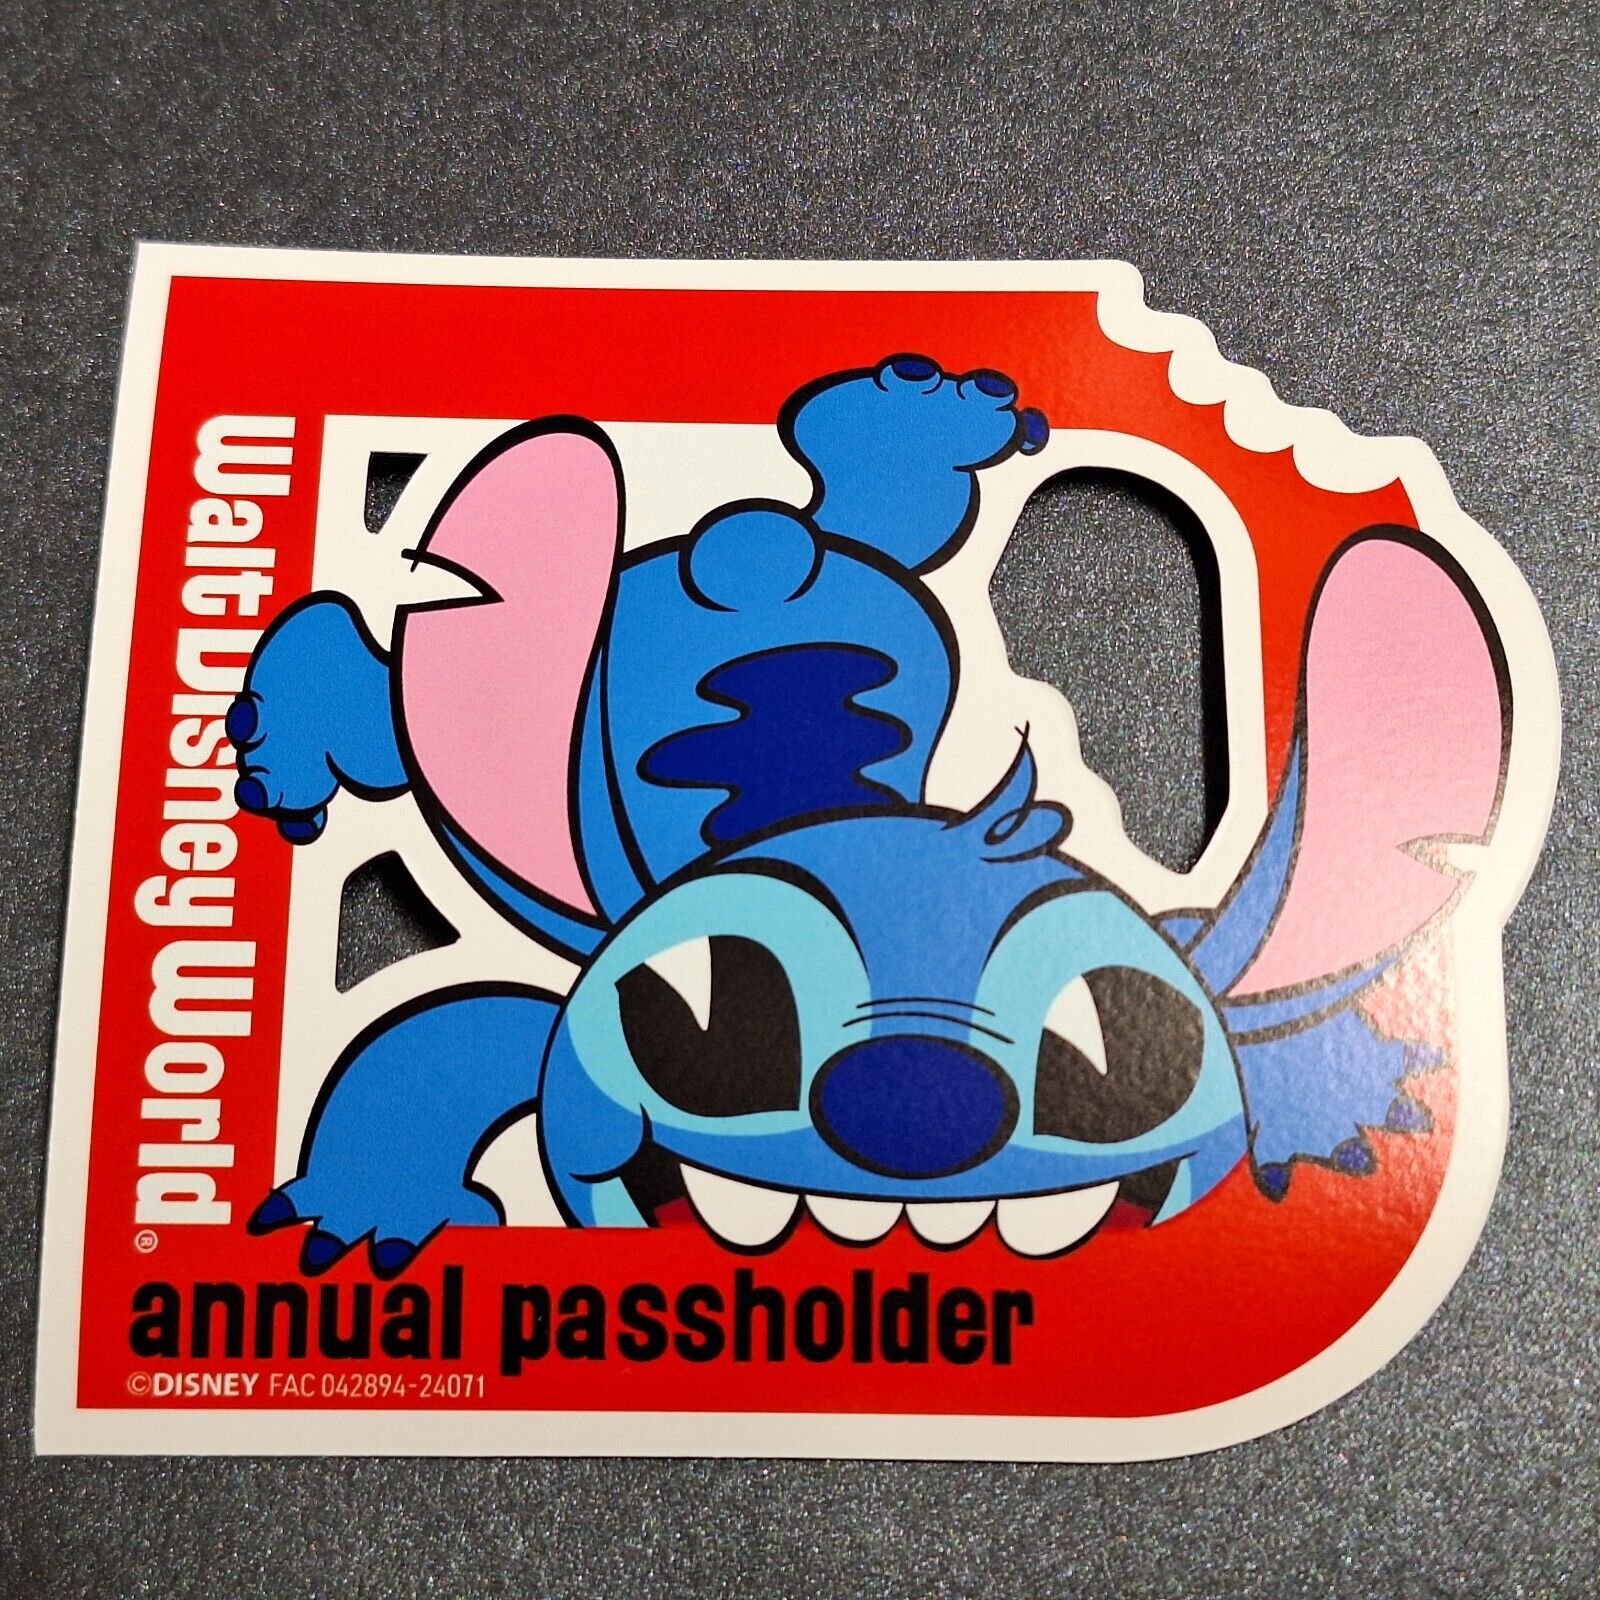 Aftermarket Walt Disney Annual Passholder Stitch in 2024 magnet